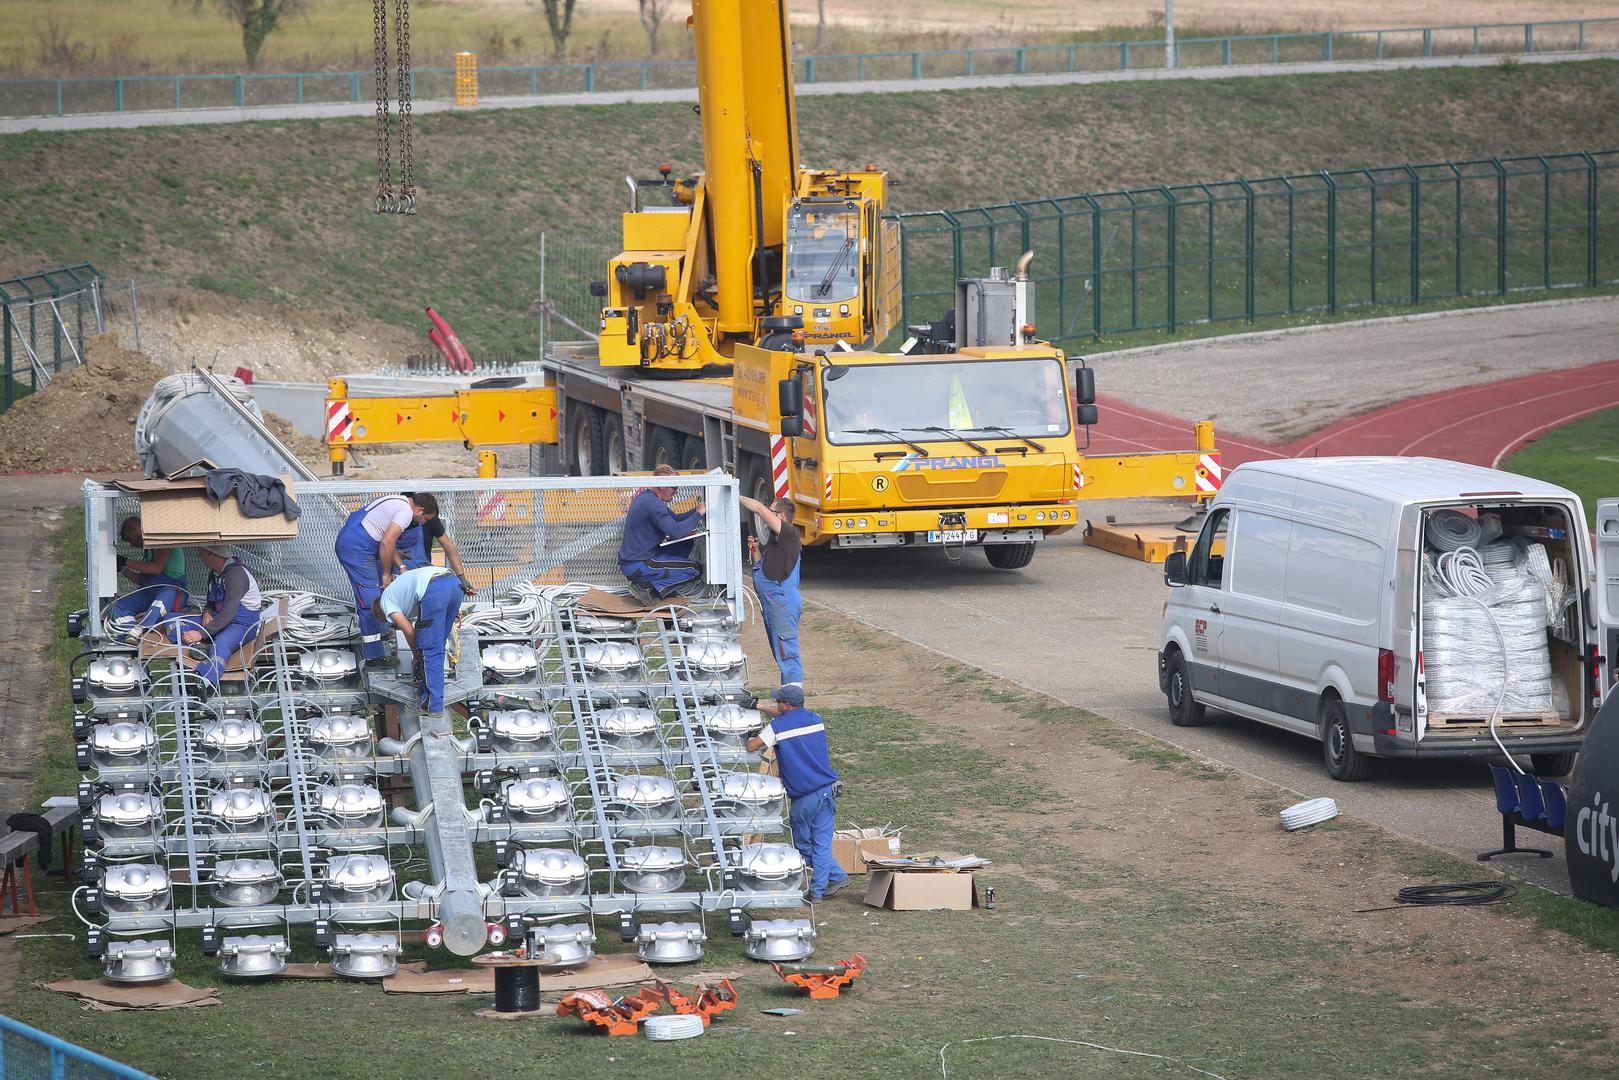 Gradski stadion u Gorici napokon će imati reflektore!

